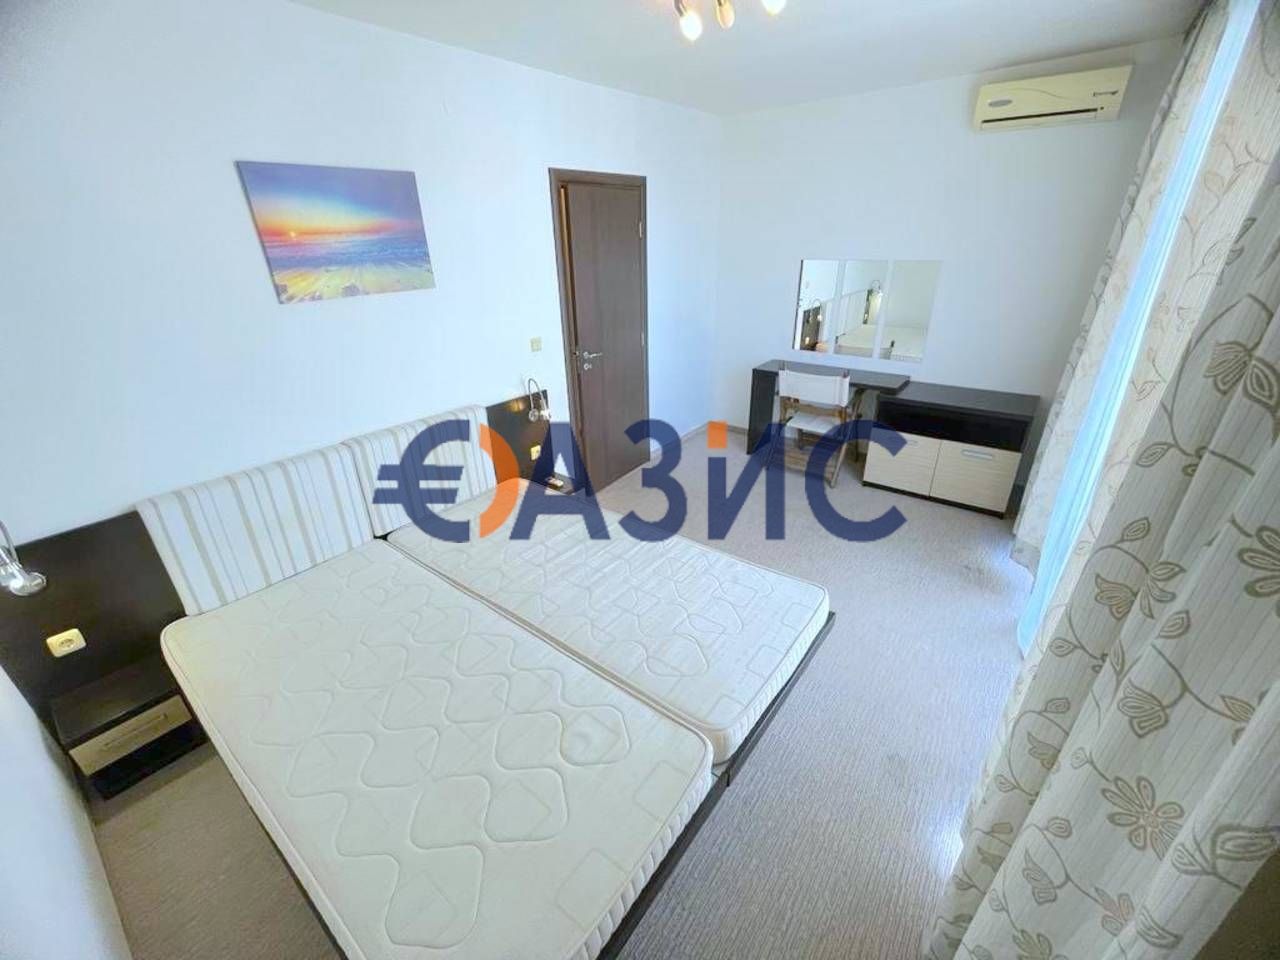 Апартамент с 1 спалня в Тарсис,Слънчев бряг,България-67 кв. м. 69500